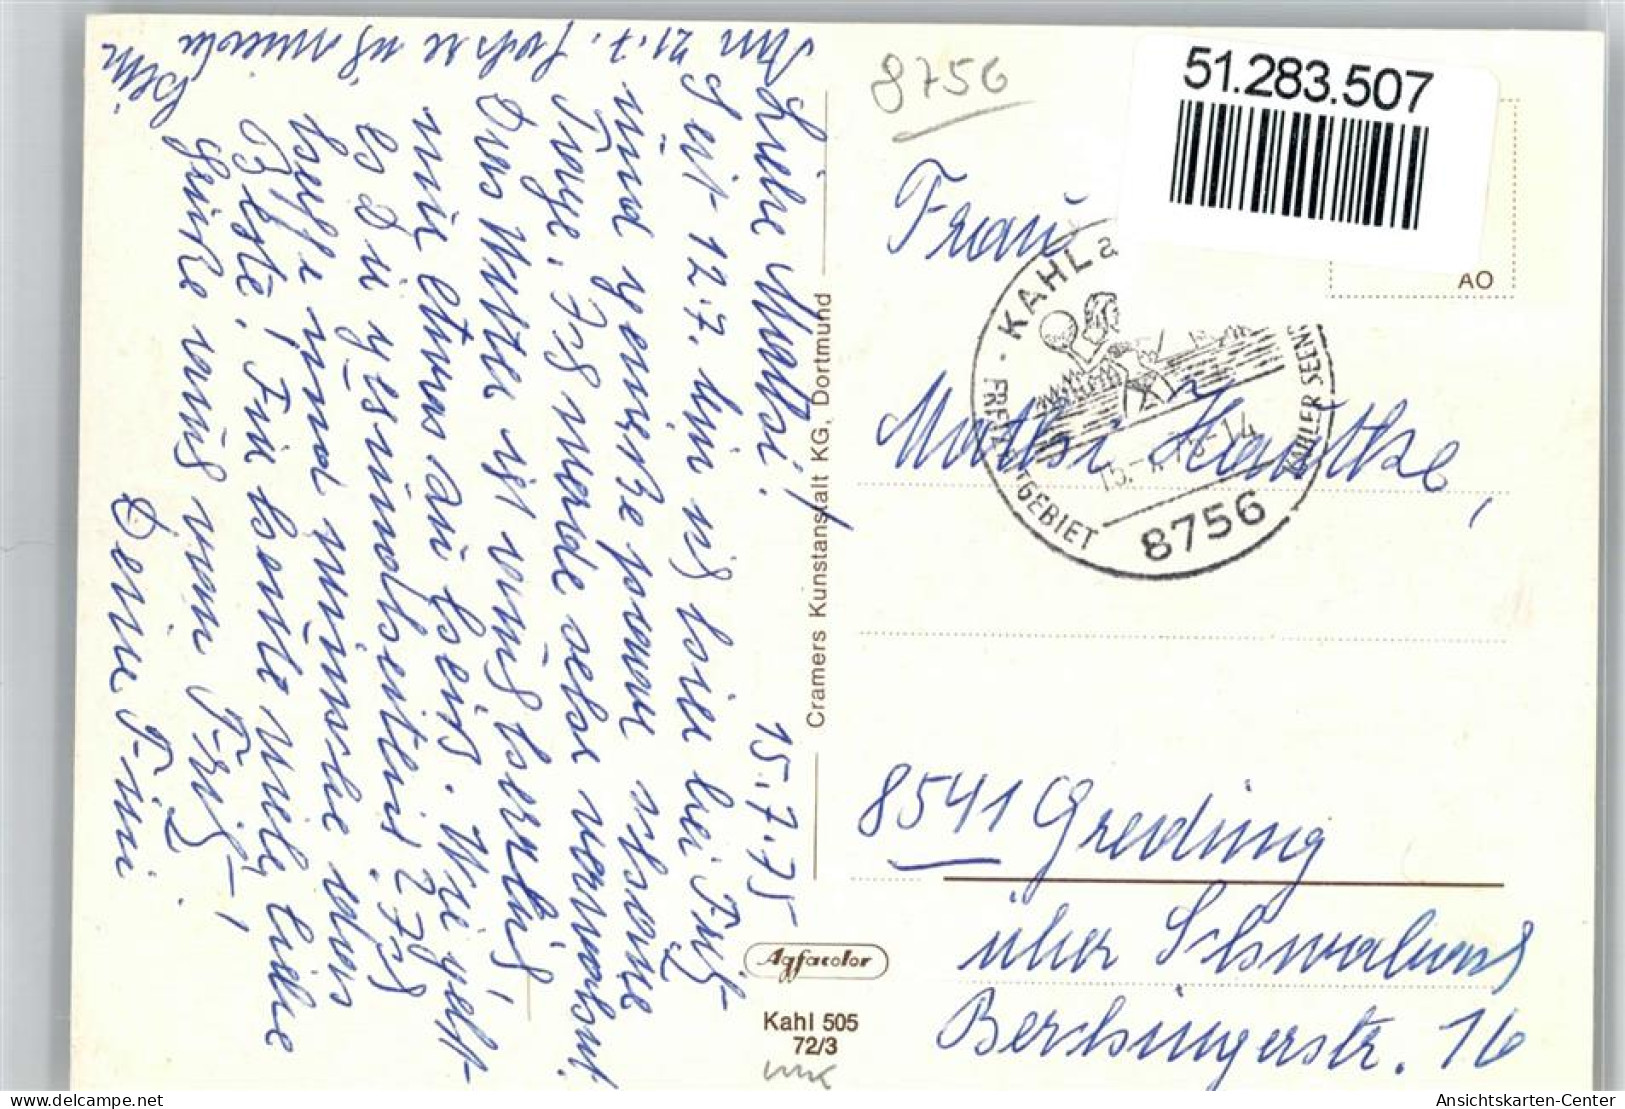 51283507 - Kahl A. Main - Aschaffenburg